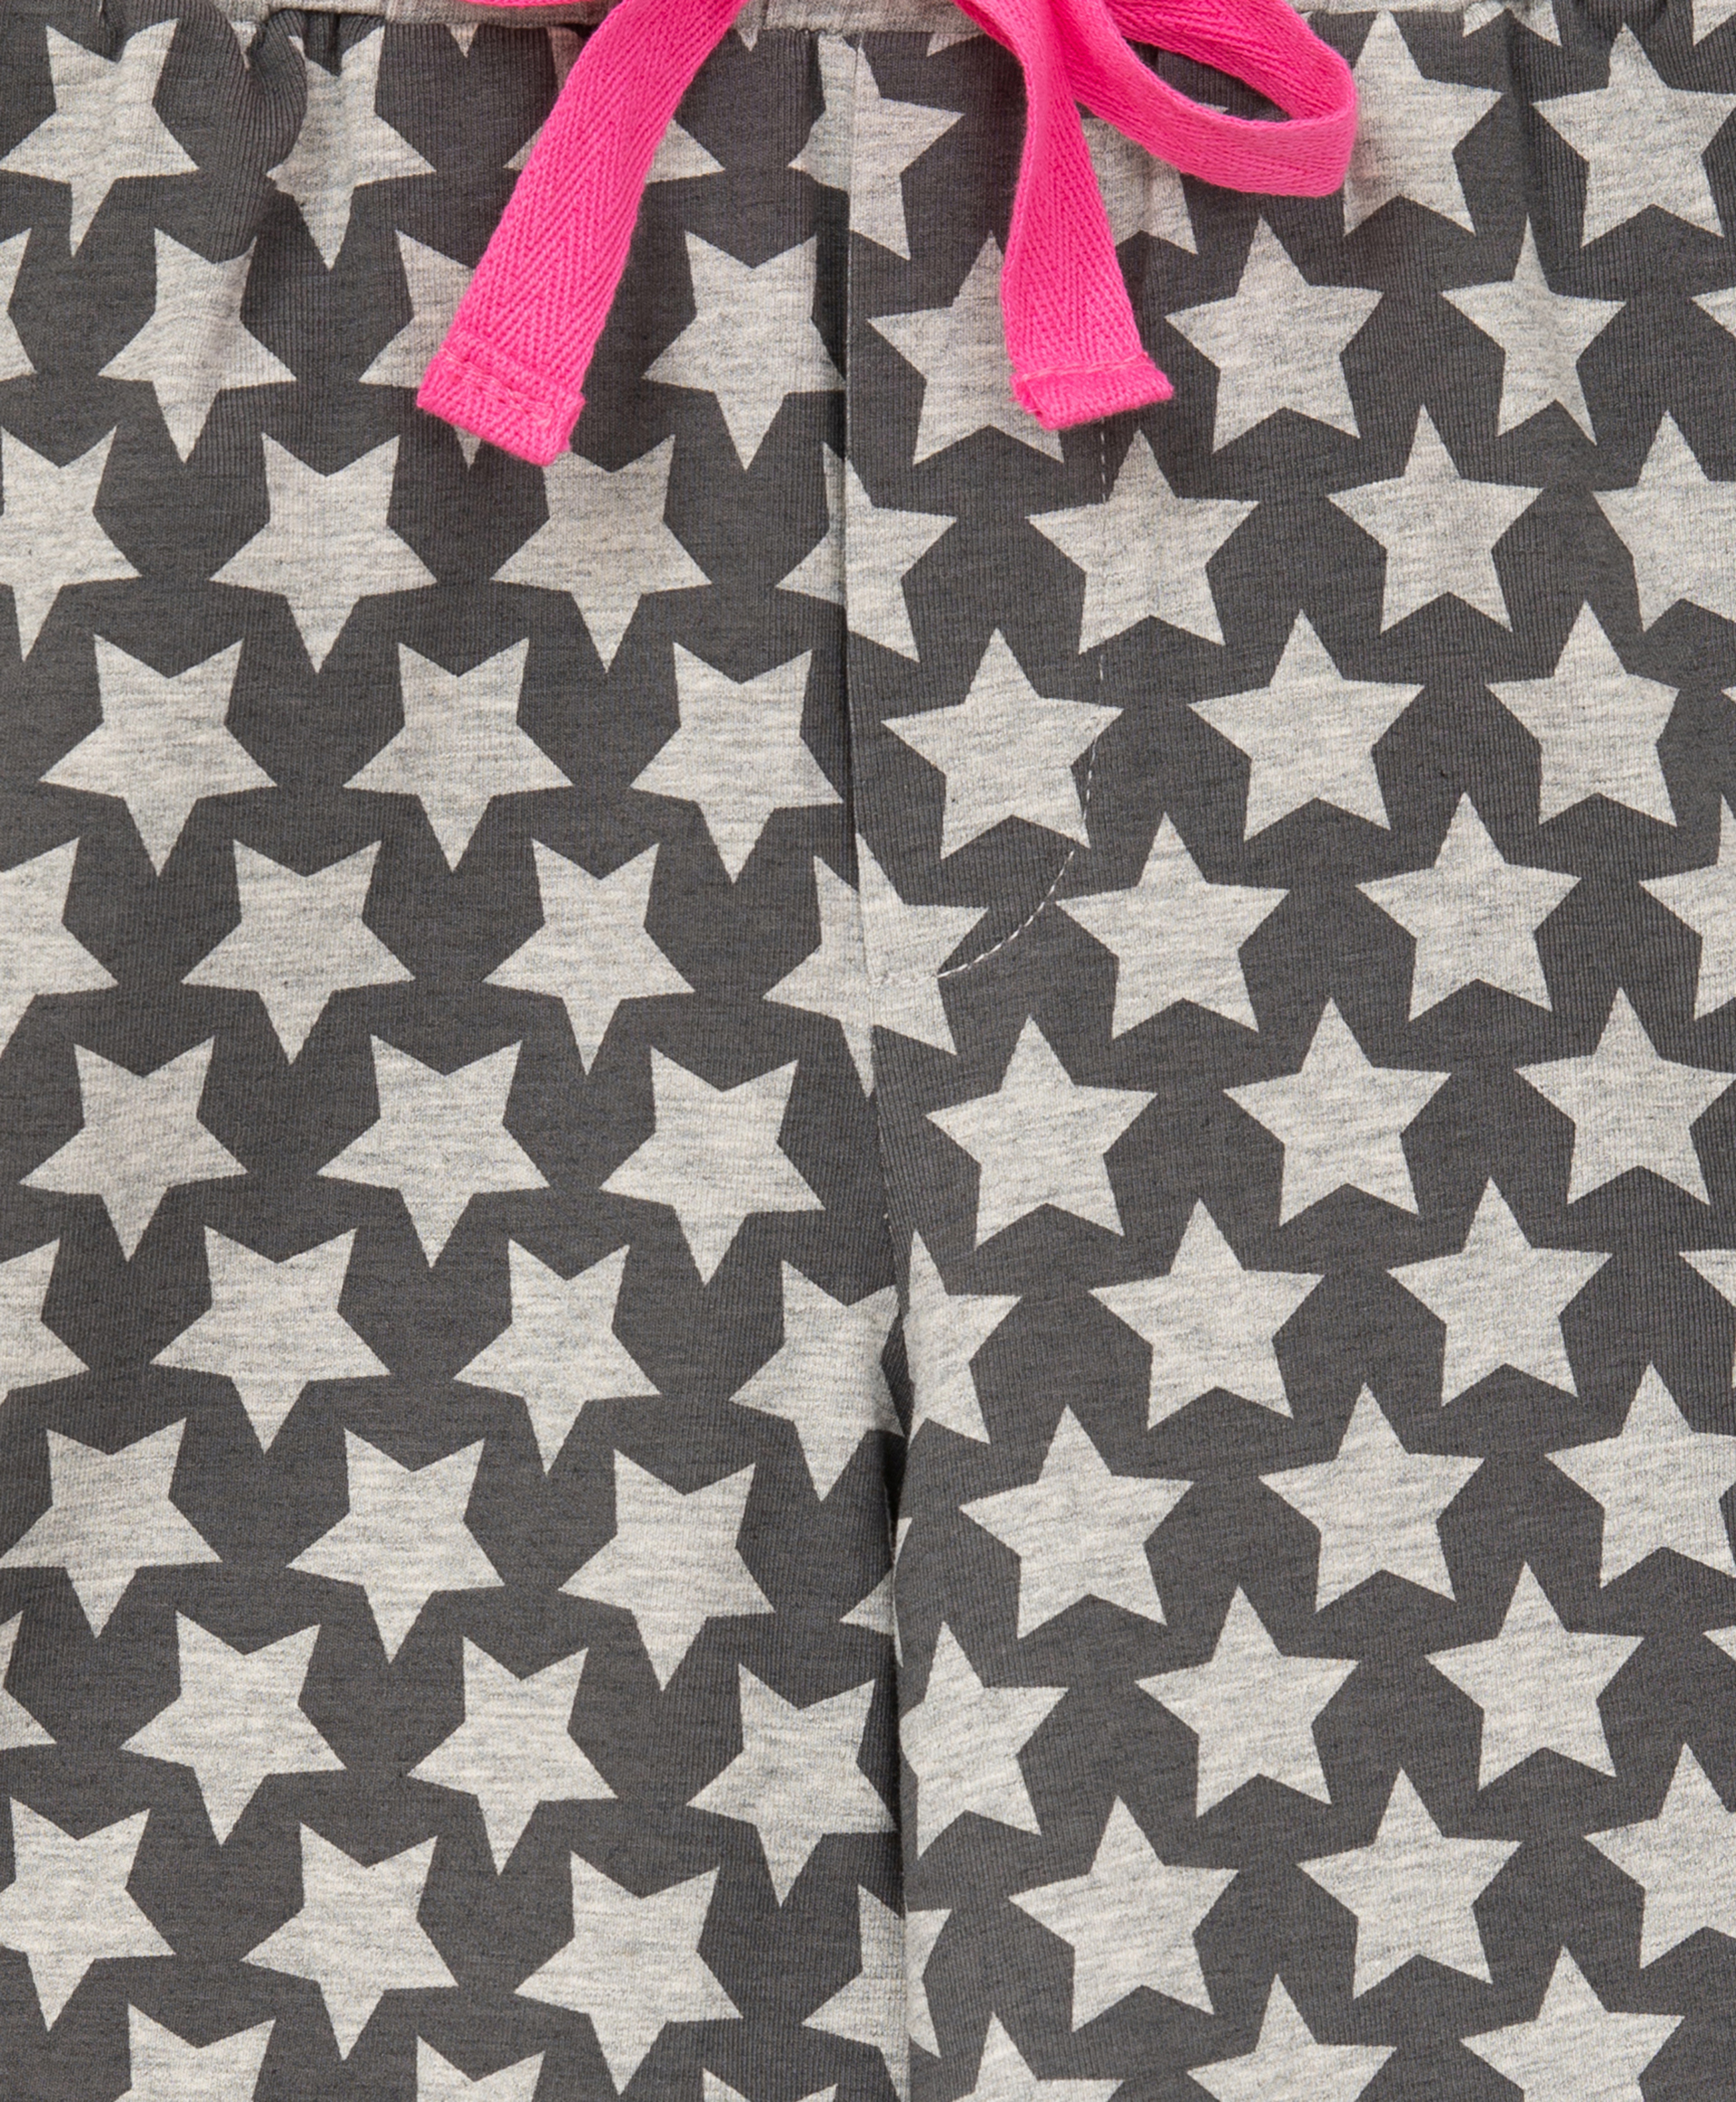 Пижама с принтом розовая Gulliver 22100GC9701, размер 122-128, цвет розовый - фото 5